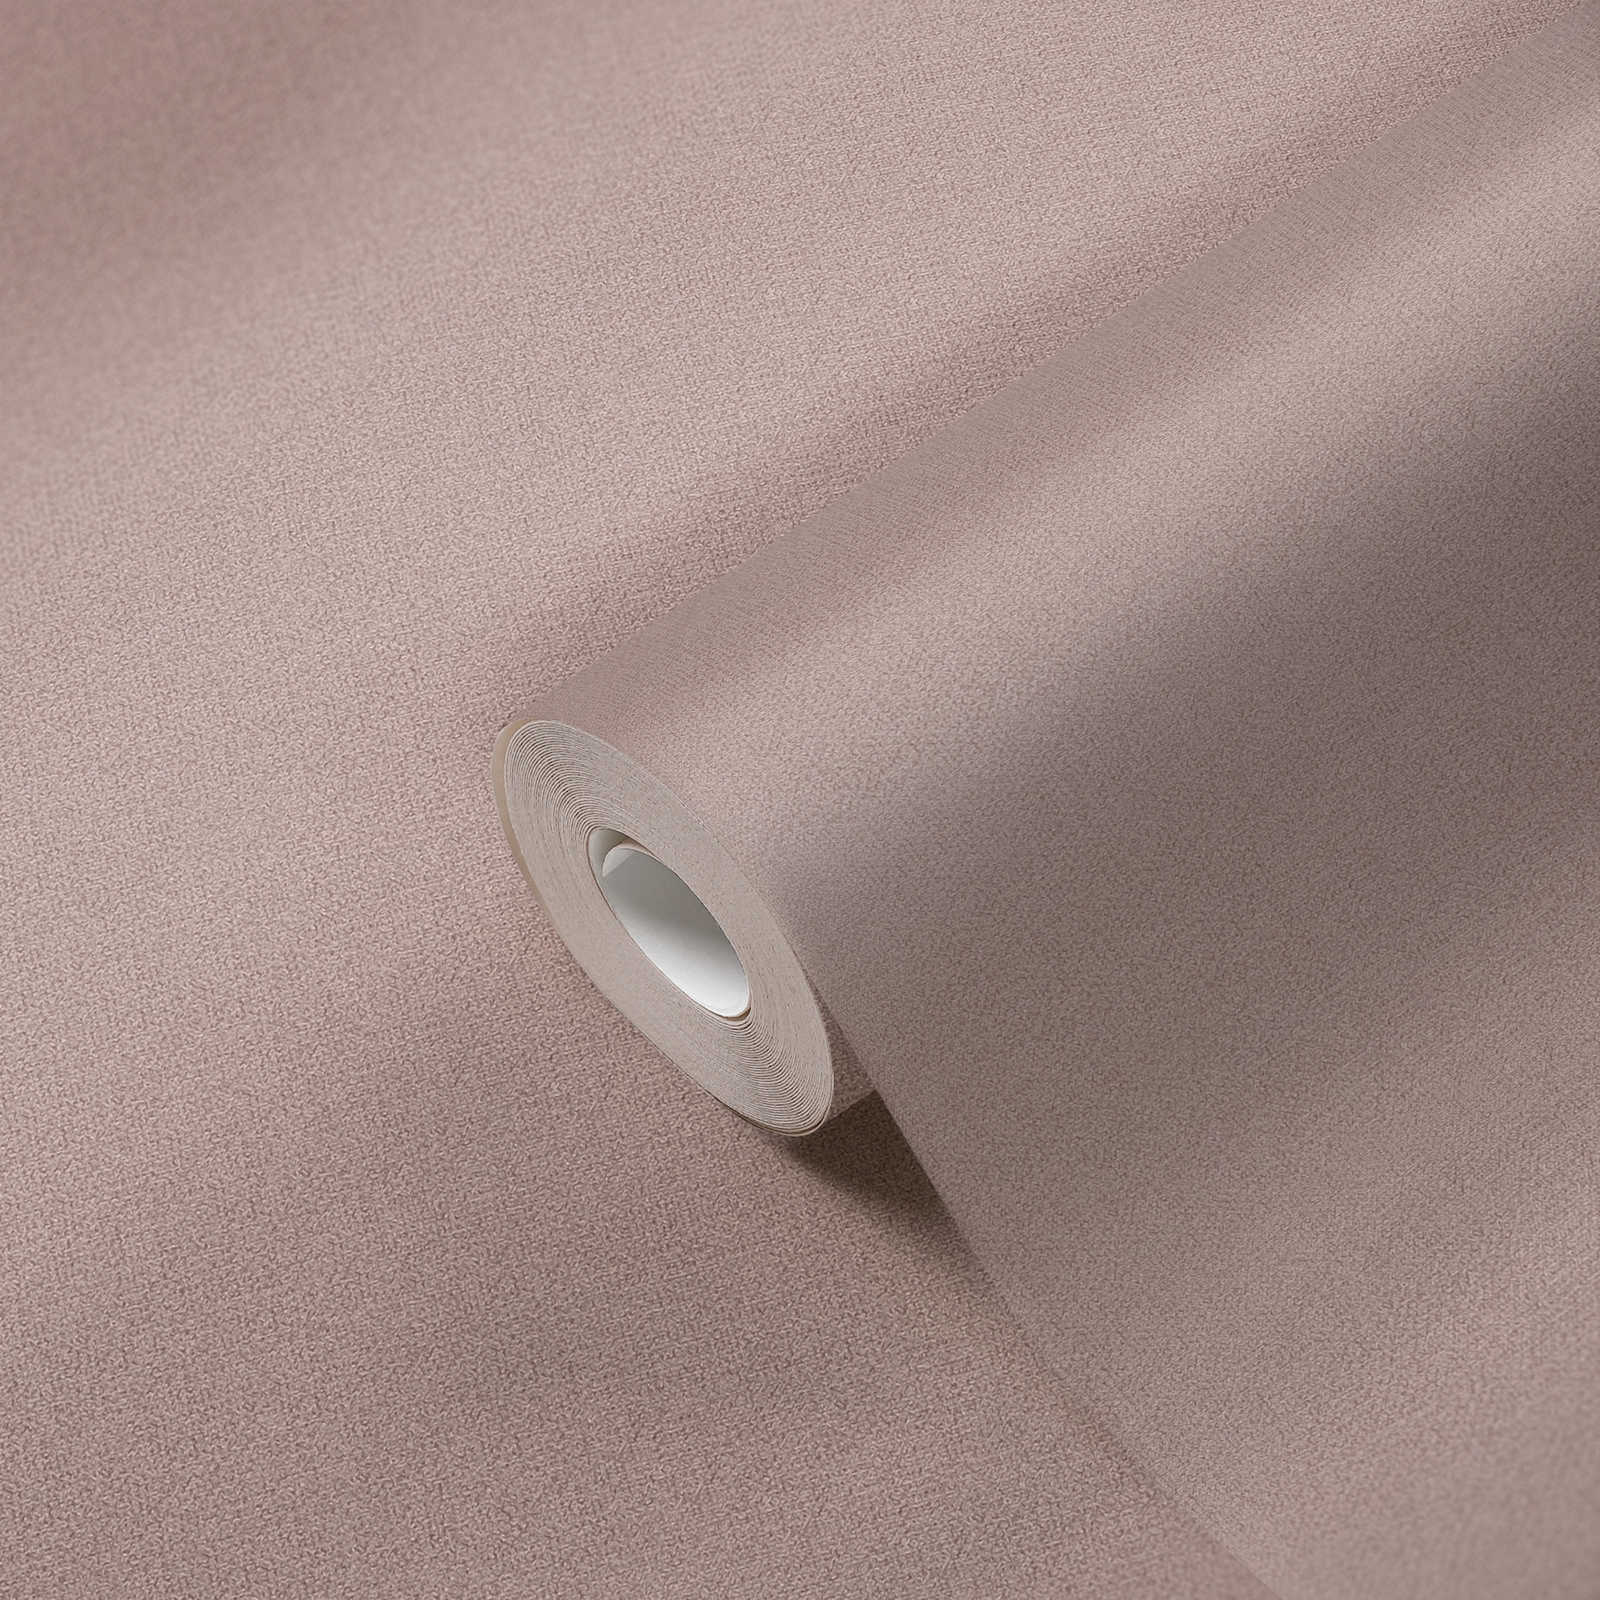             Papel pintado no tejido liso con estructura de lino - gris, marrón, gris
        